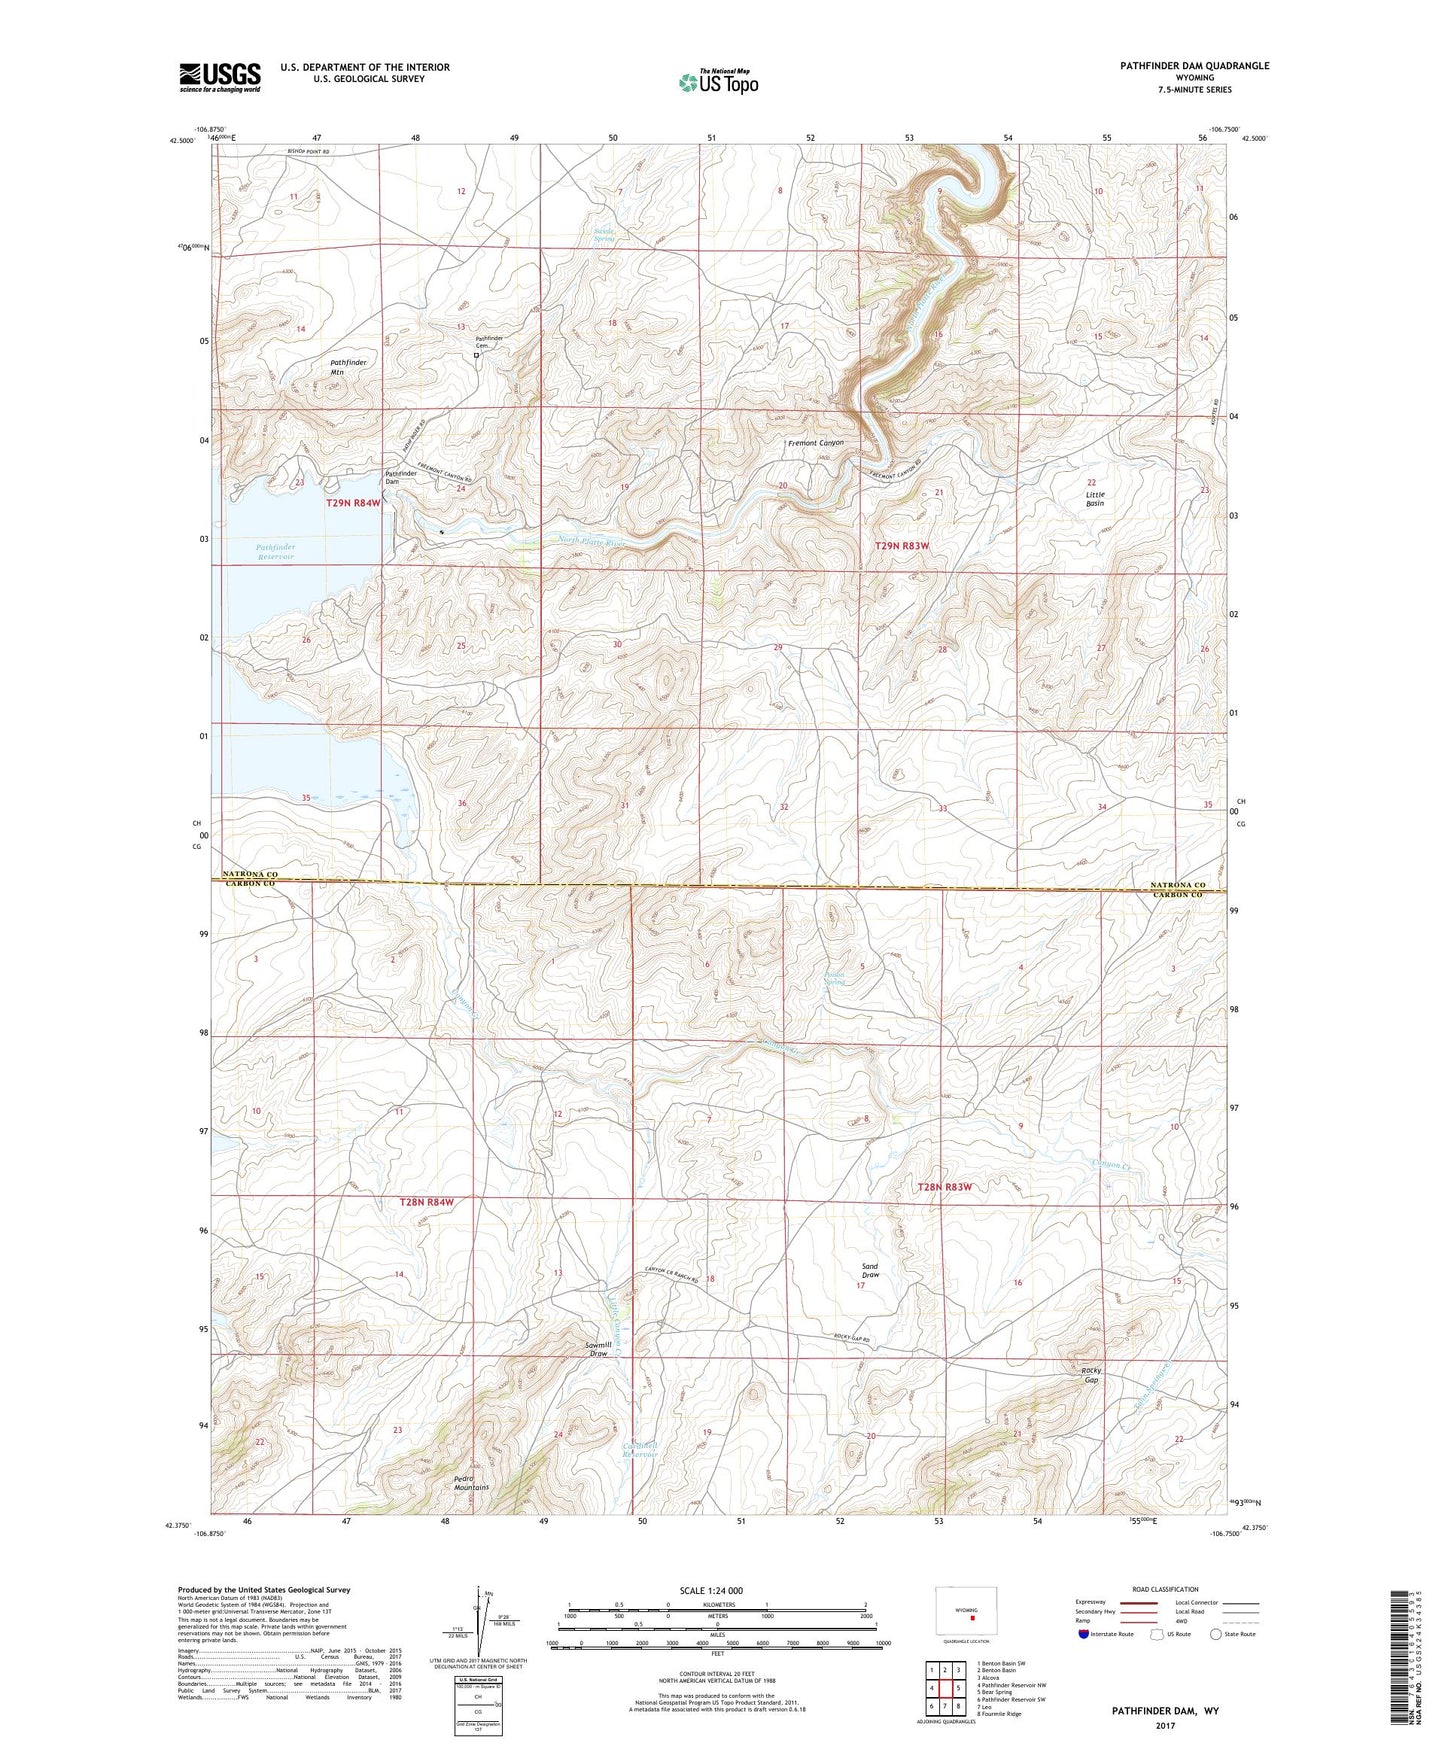 Pathfinder Dam Wyoming US Topo Map Image